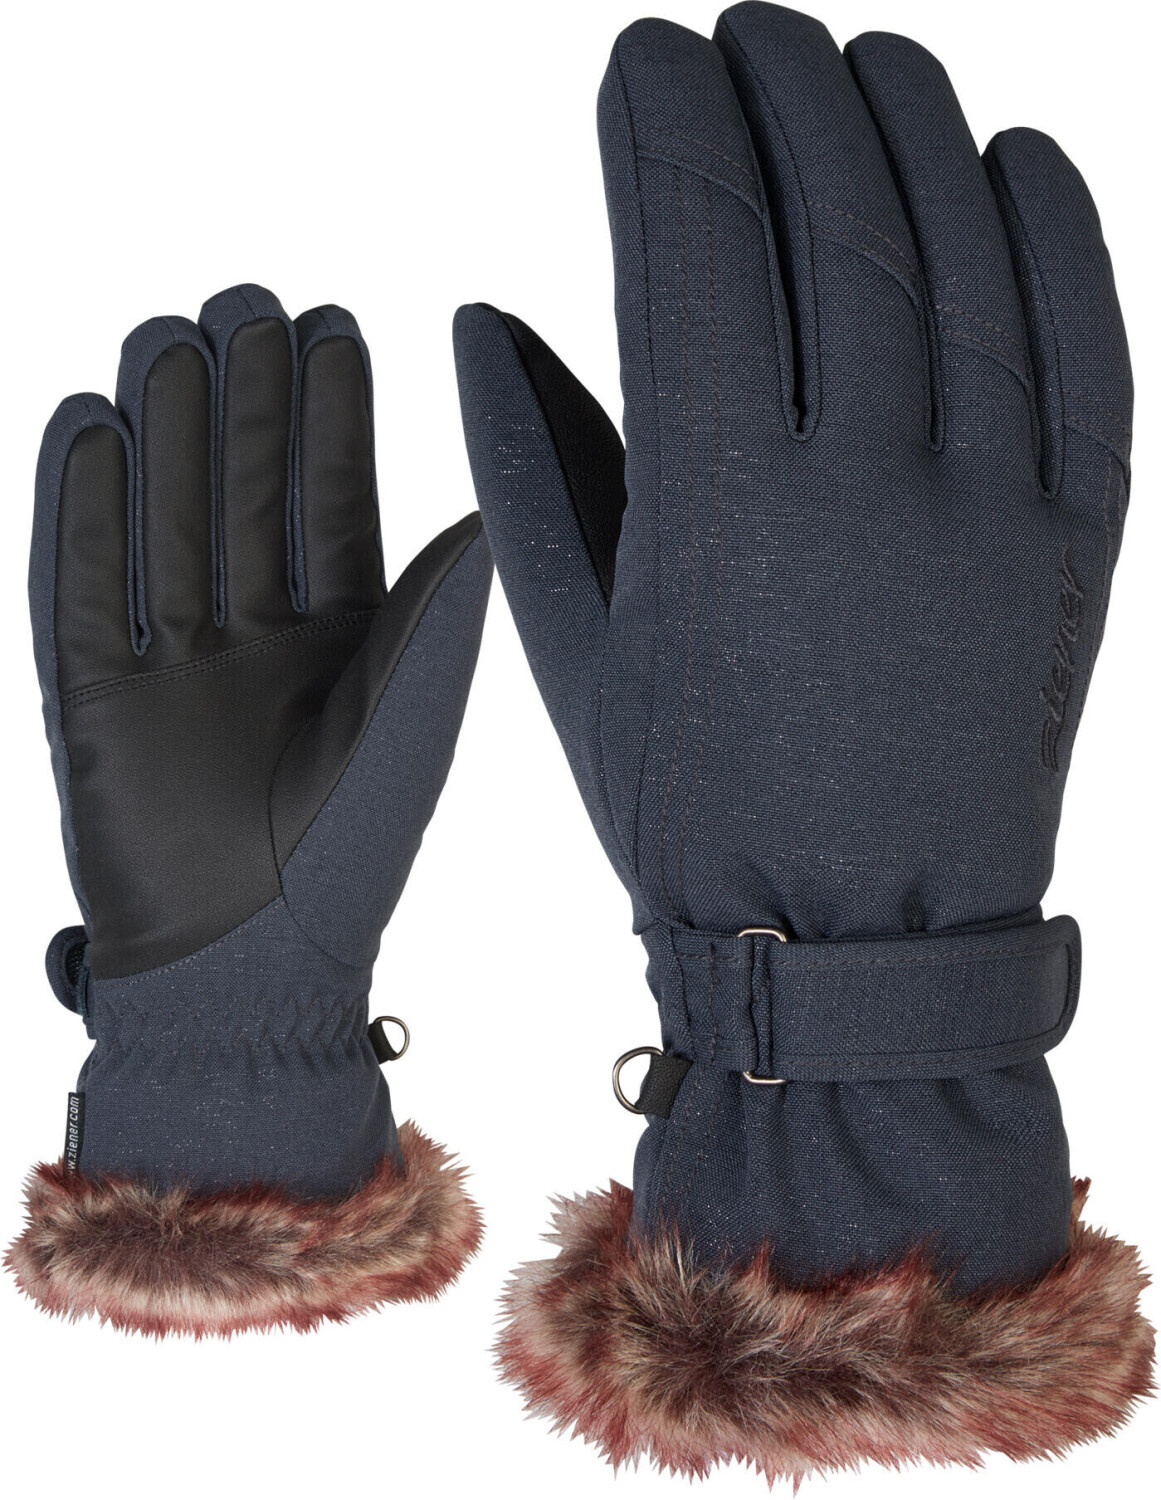 Ziener KIM Women Glove | ab 36,99 gray spark Preisvergleich (801117) ink € bei